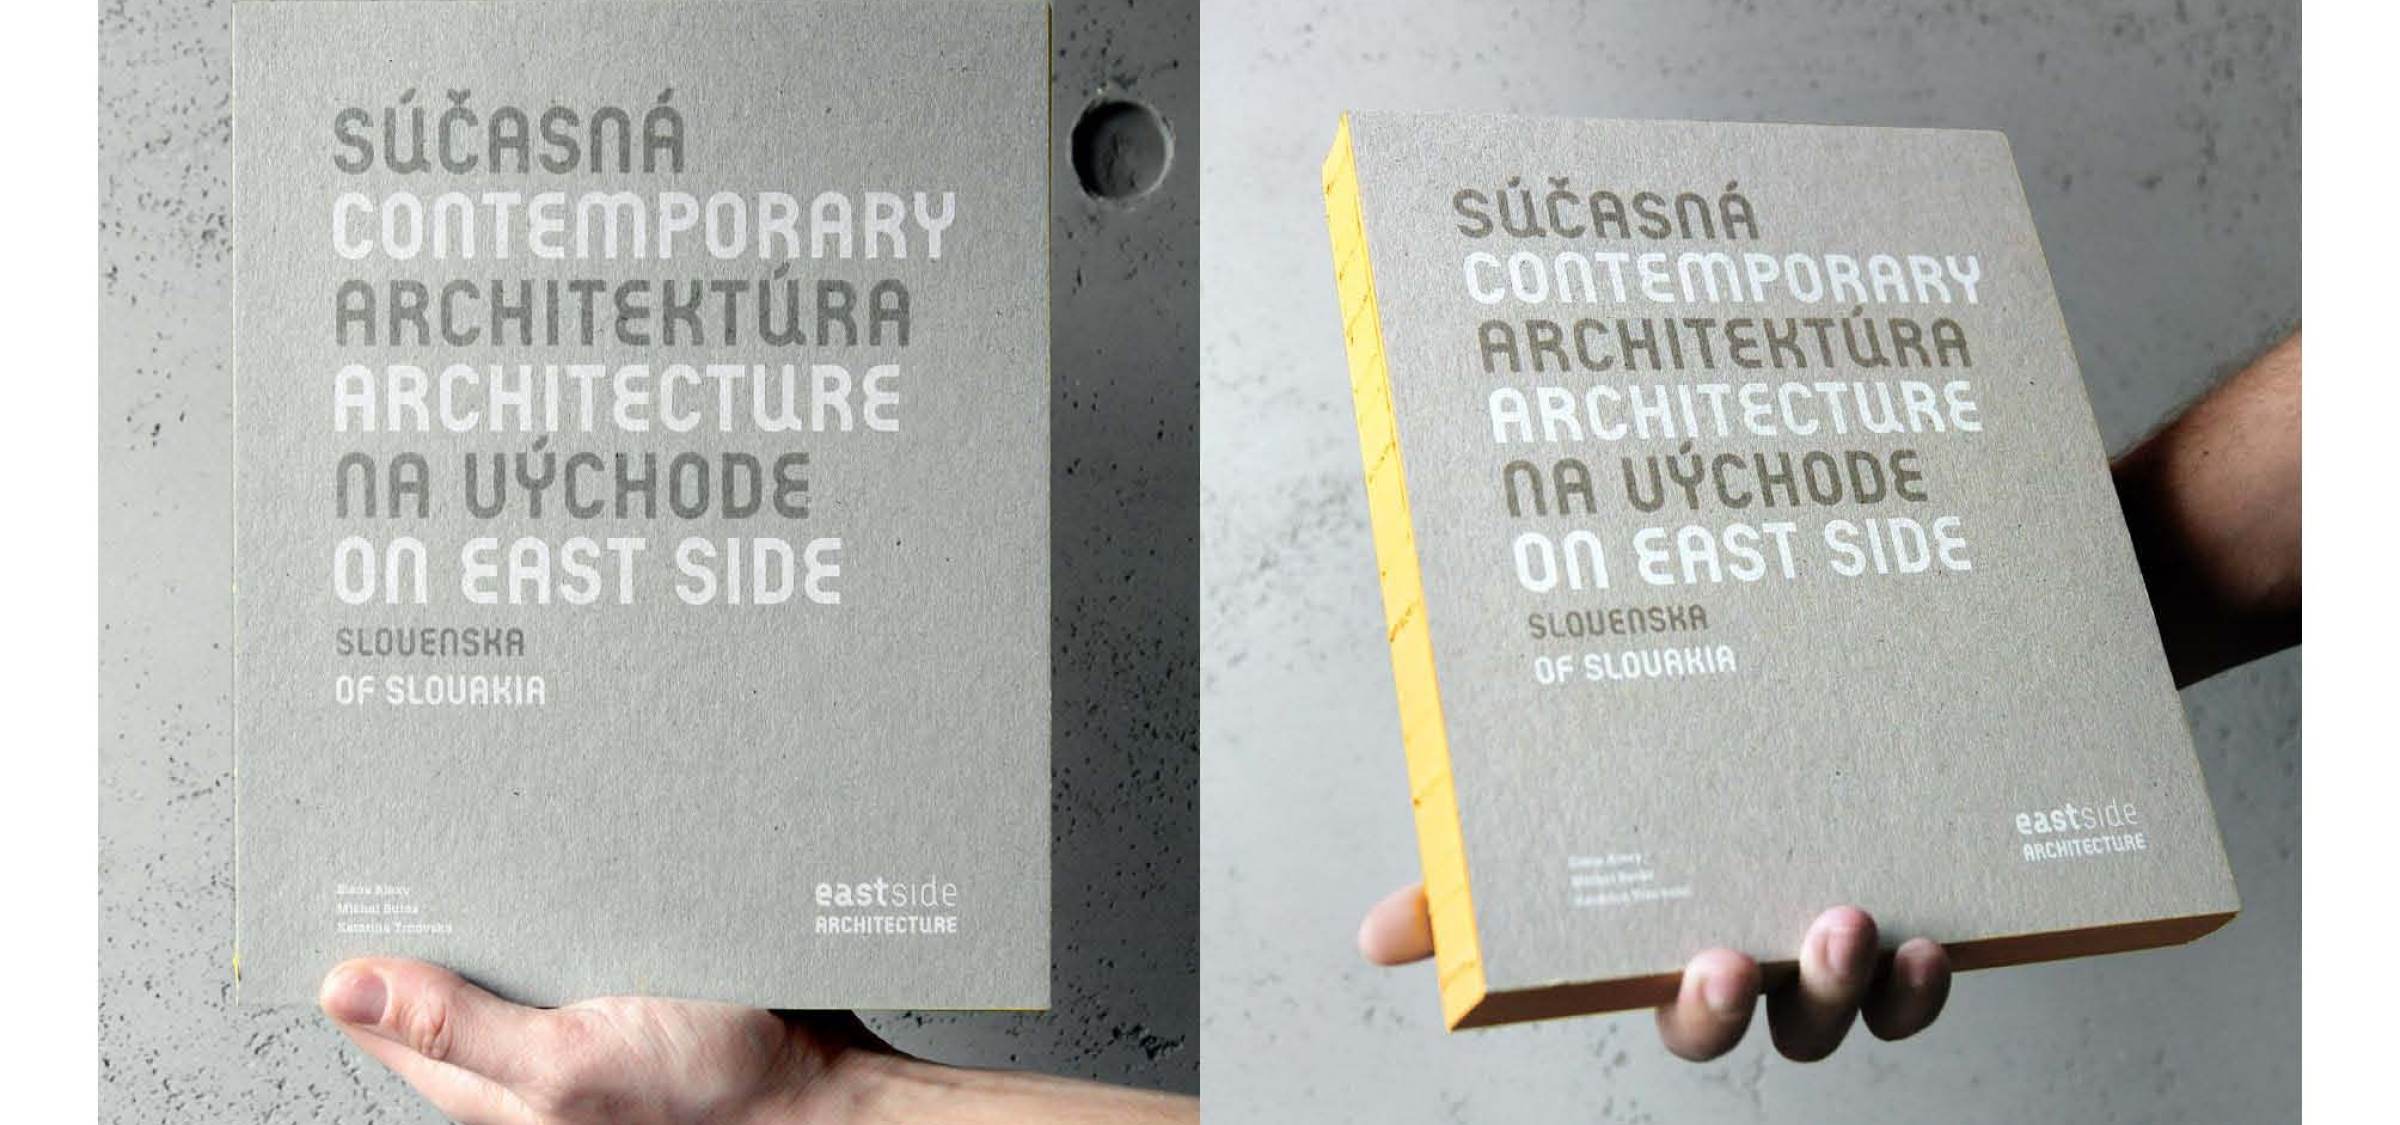 Podporte vydanie knihy | Aktuálne | Atrium Architekti